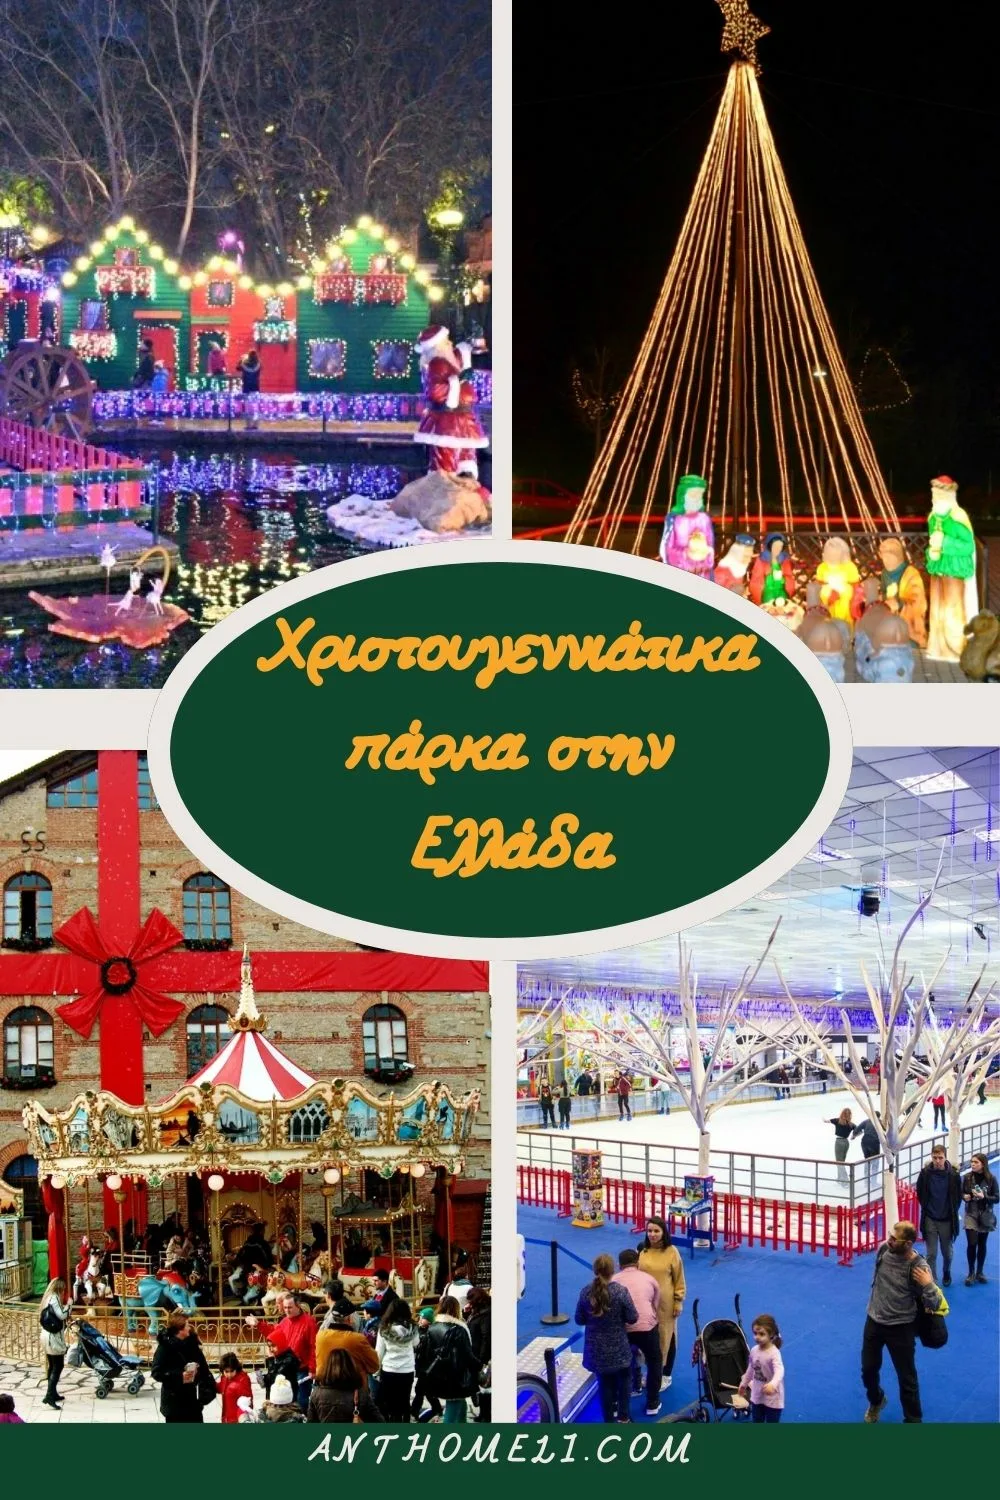 Επισκεφθείτε χριστουγεννιάτικα πάρκα στην Ελλάδα. Μύλος των Ξωτικών στα Τρίκαλα, Ονειρούπολη στη Δράμα, Αστερόσκονη στα Ιωάννινα, Αστερόκοσμος στη Θεσσαλονίκη.